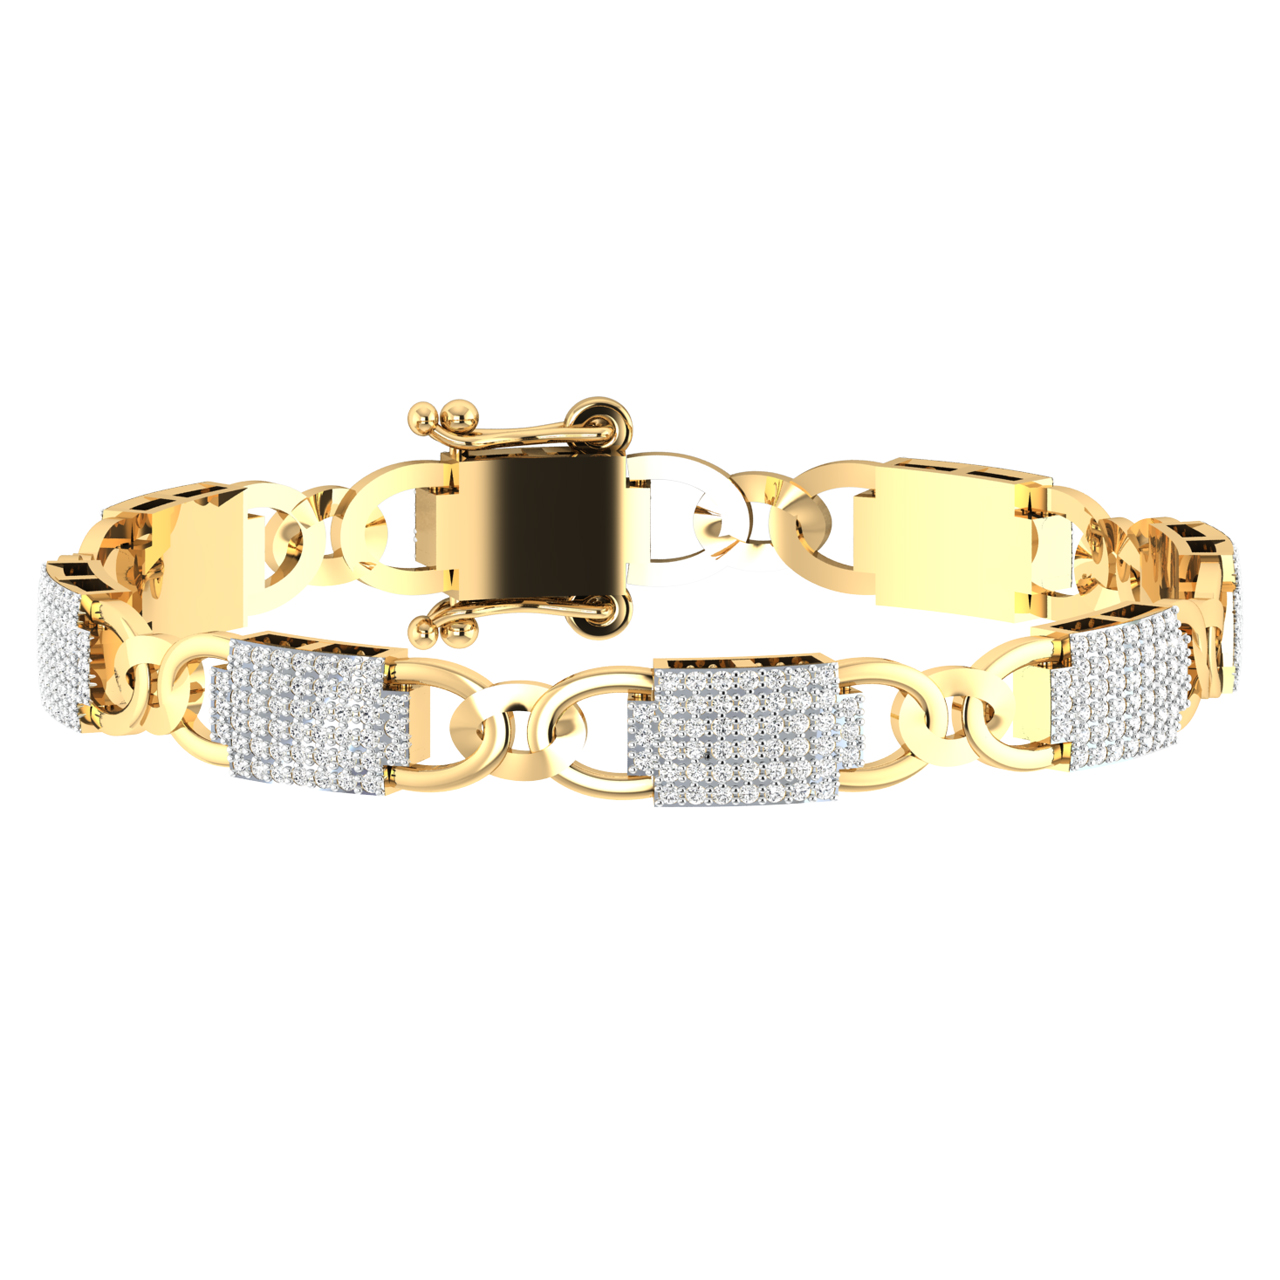 Lock Design Diamond Bracelet For Men